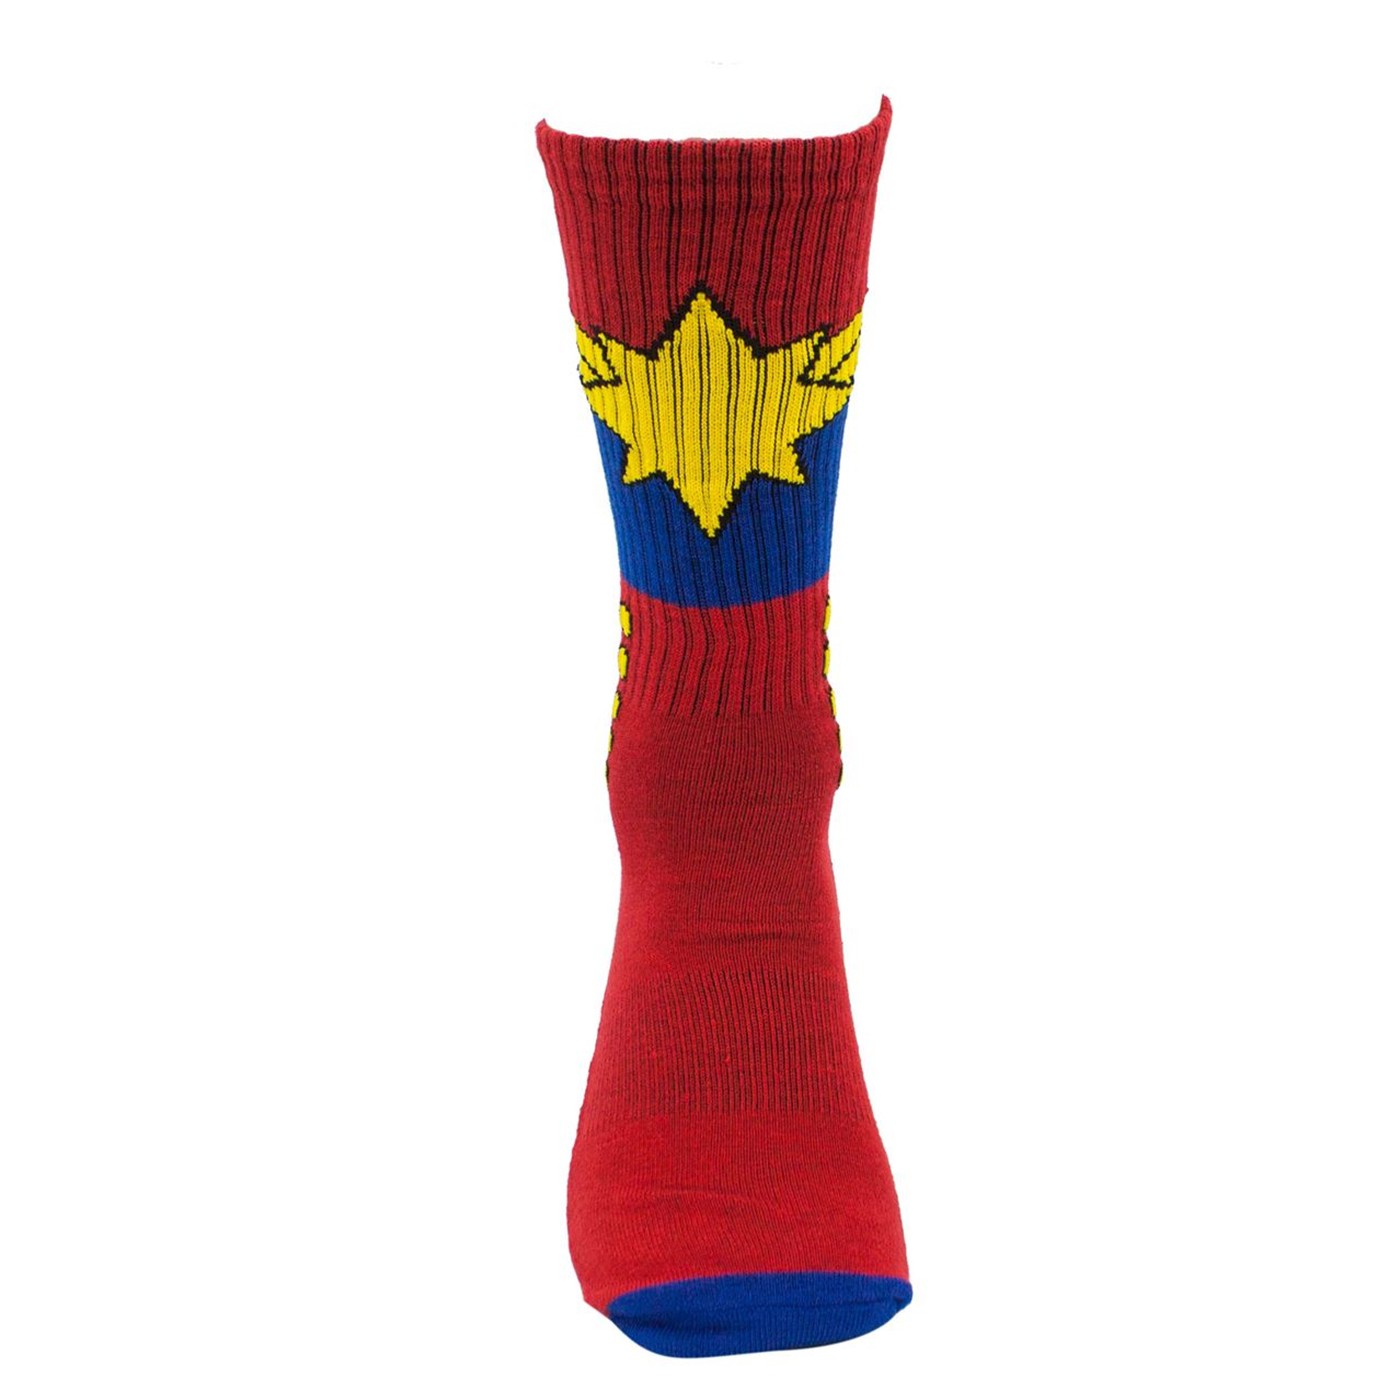 Captain Marvel Avenger Activated Athletic Socks